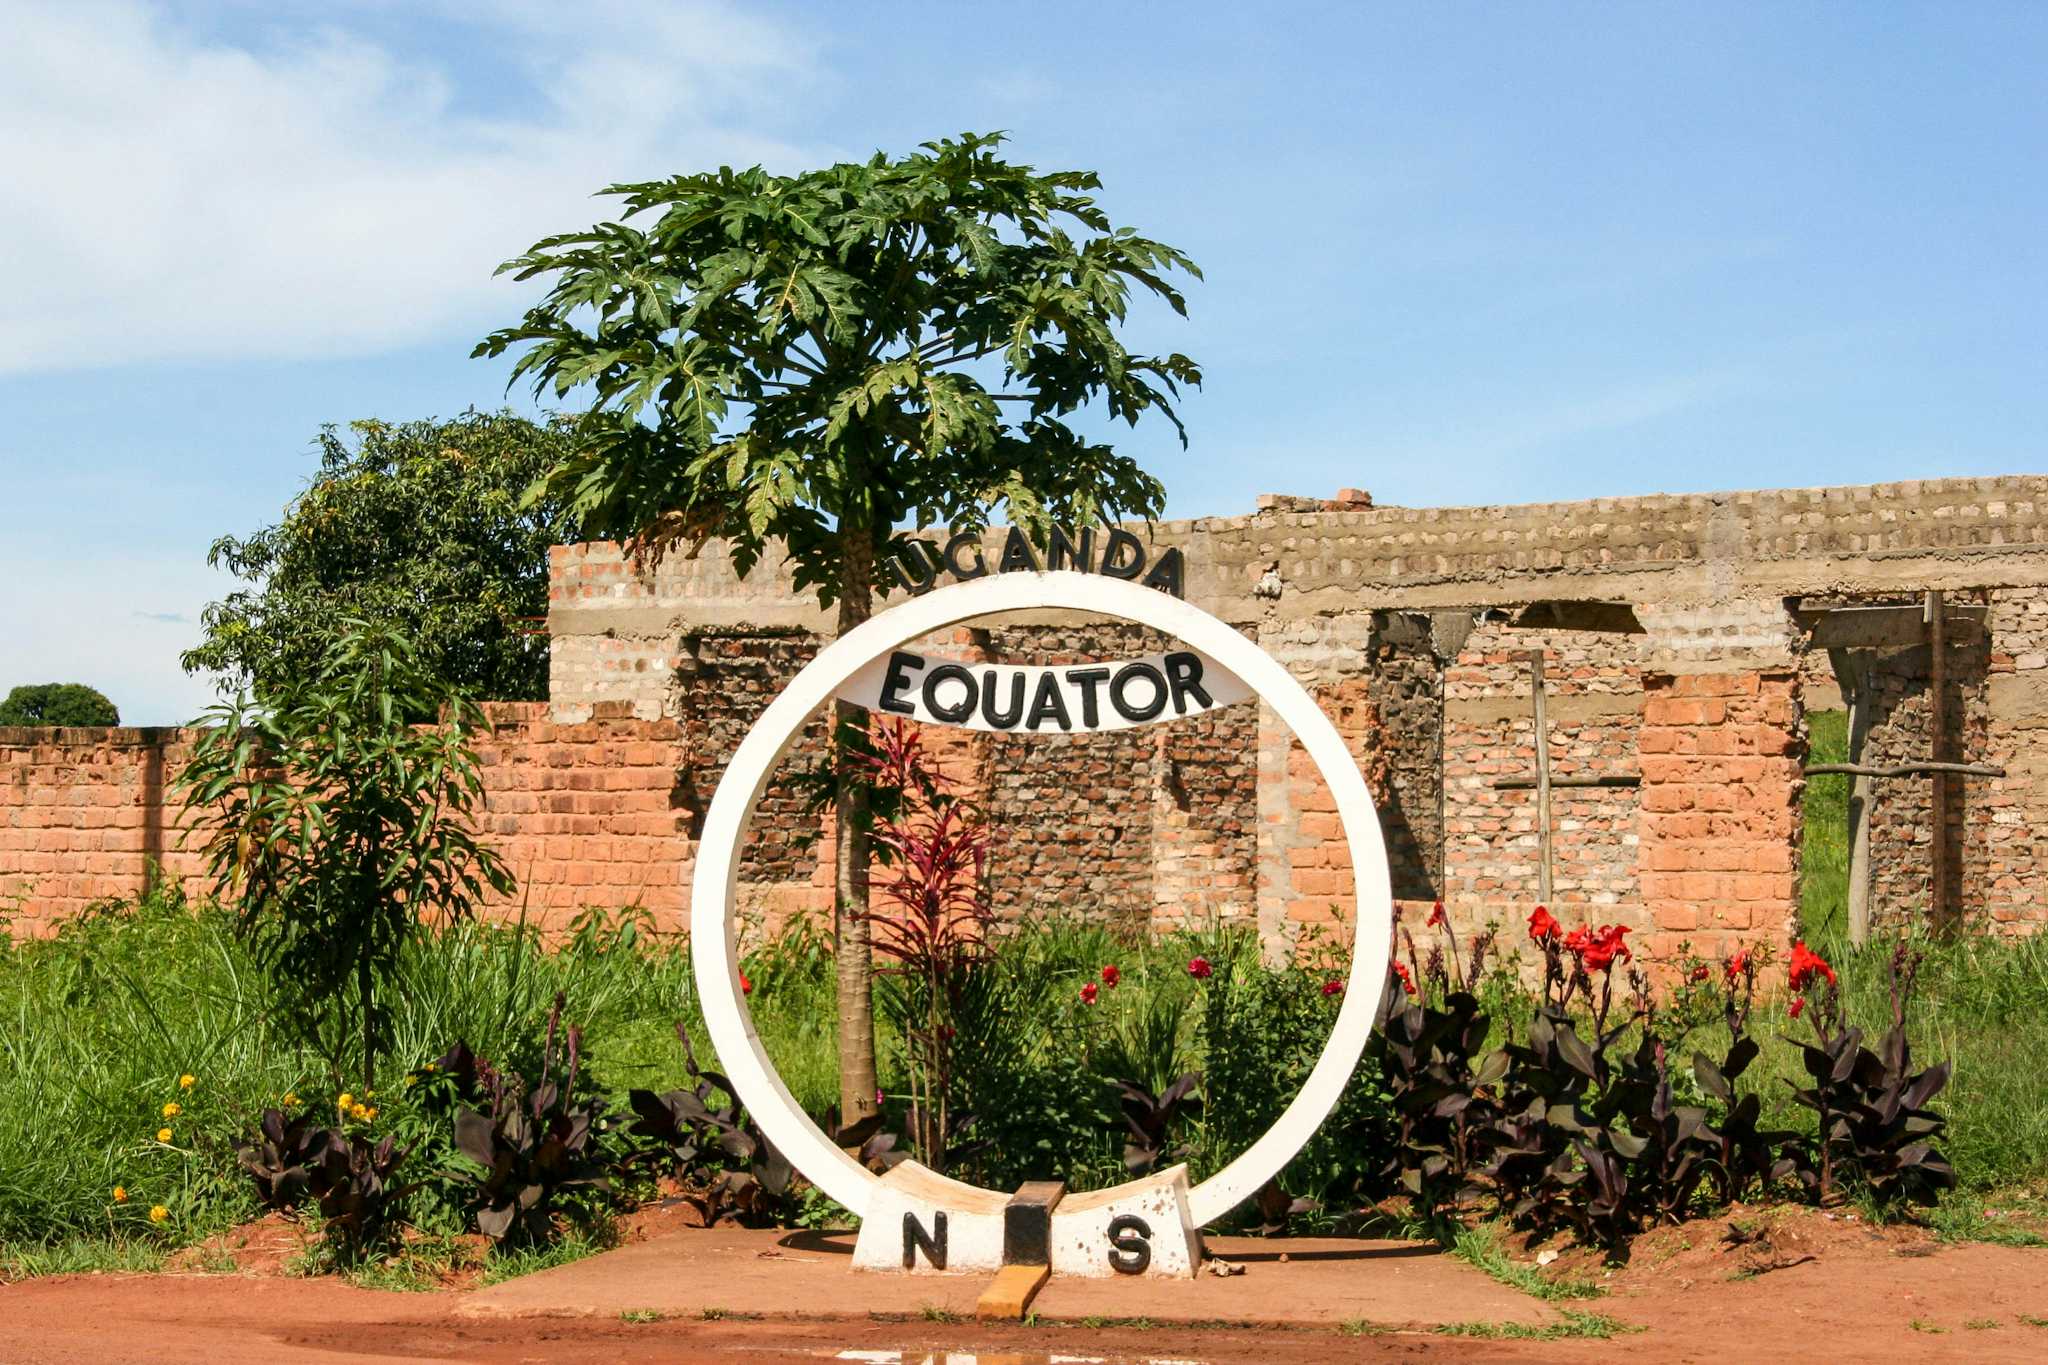 Uganda Equator